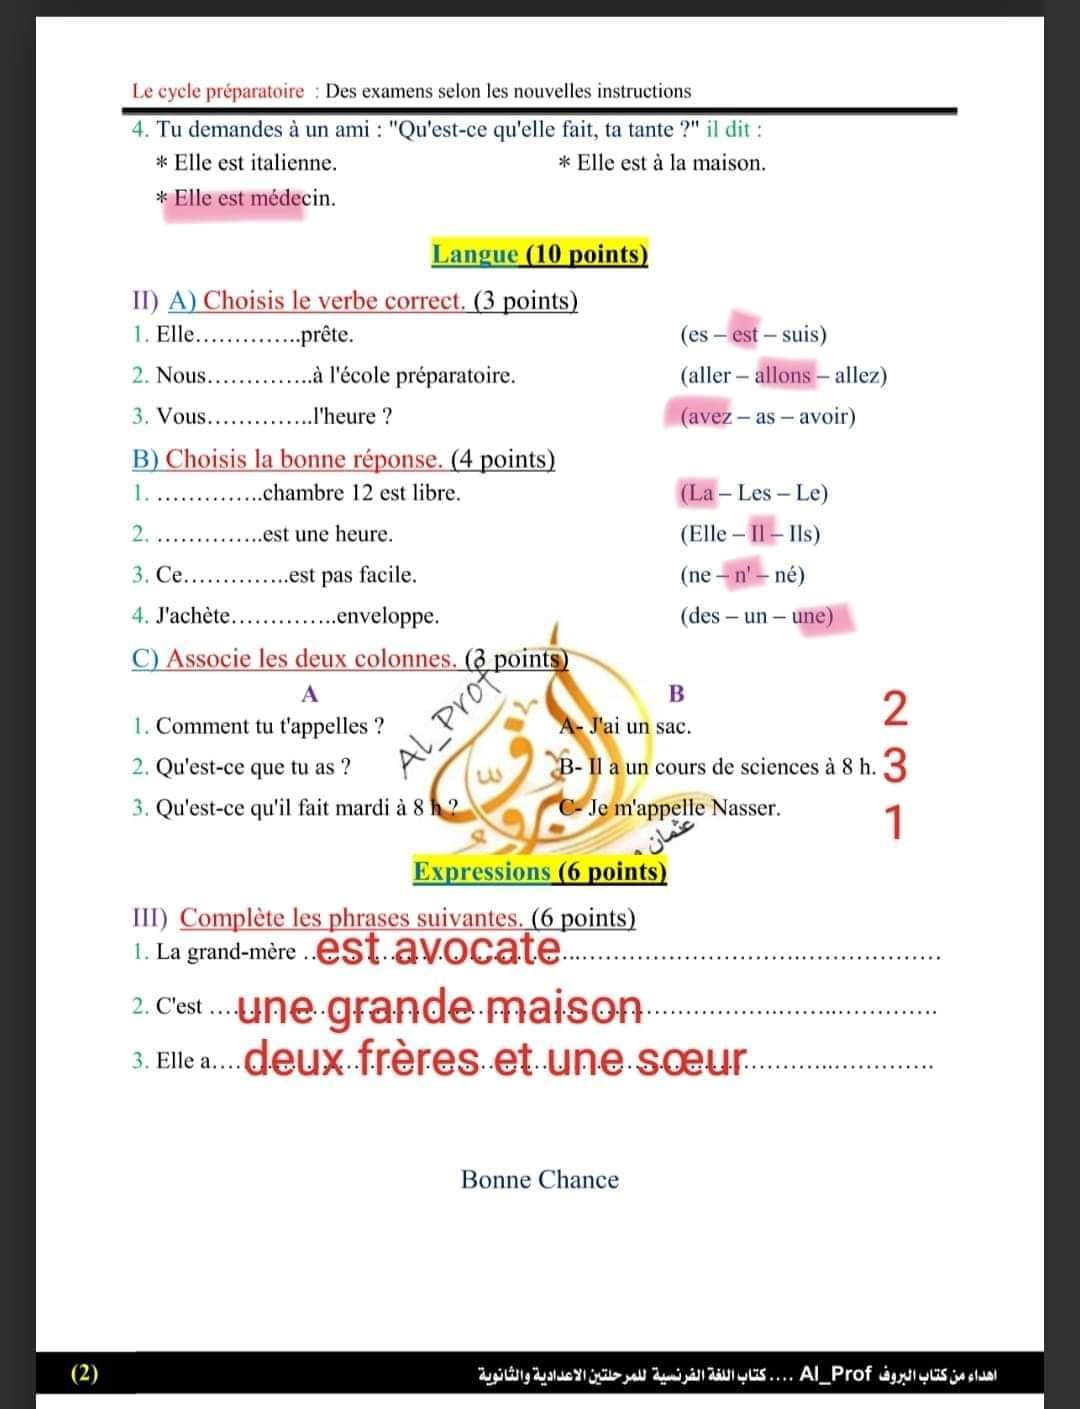 نموذج امتحان لغة فرنسية الصف الاول الاعدادي بمواصفات الورقة الامتحانية الجديدة 2024 بالإجابات